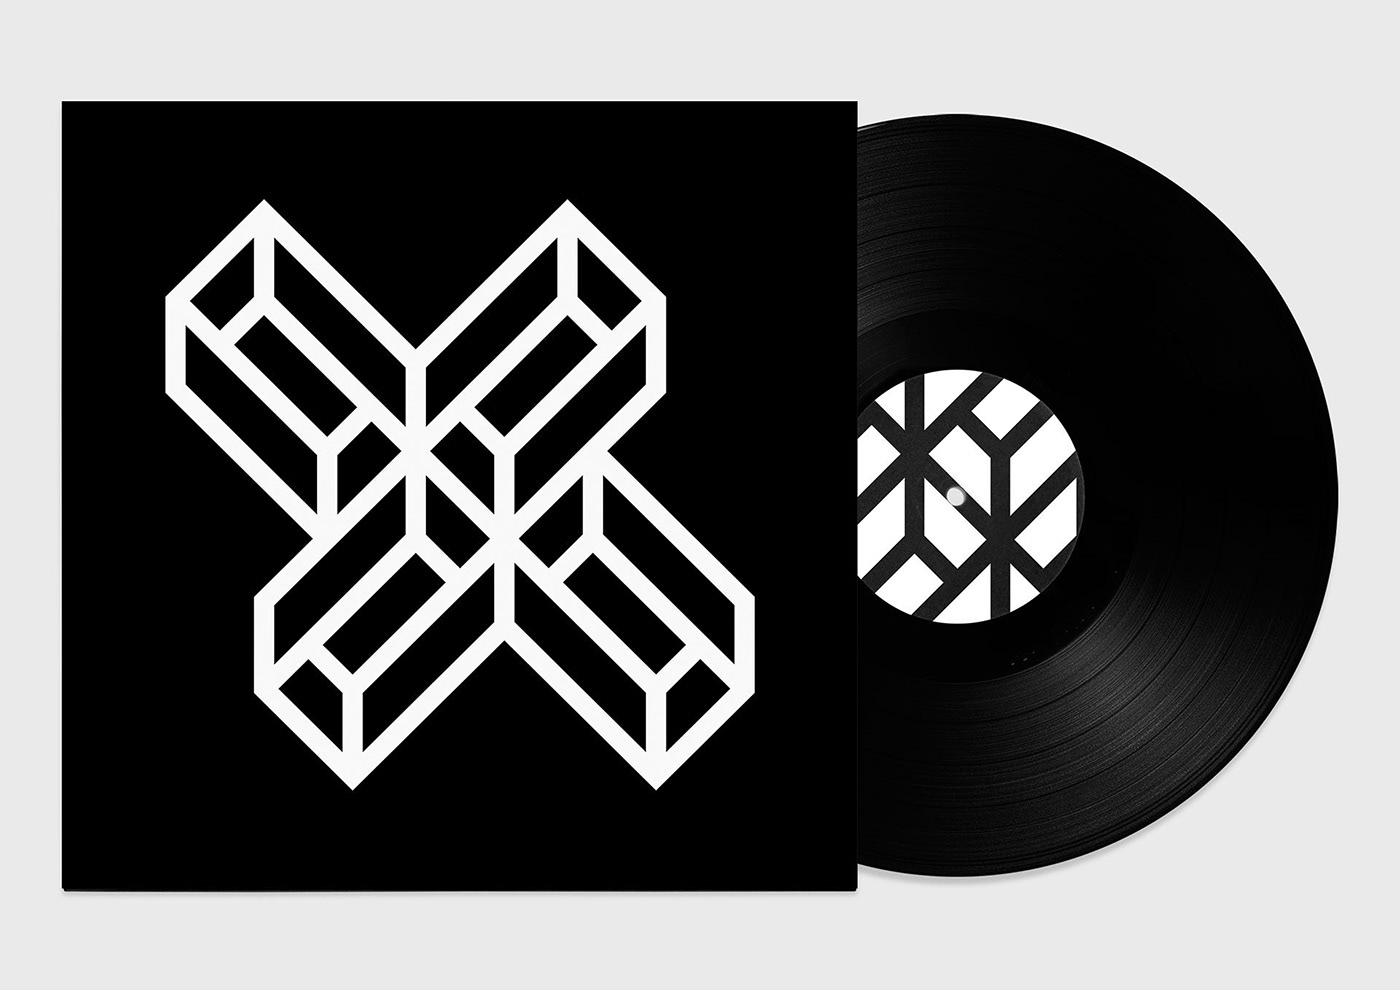 Album ep vinyl double White black artwork design ILLUSTRATION 